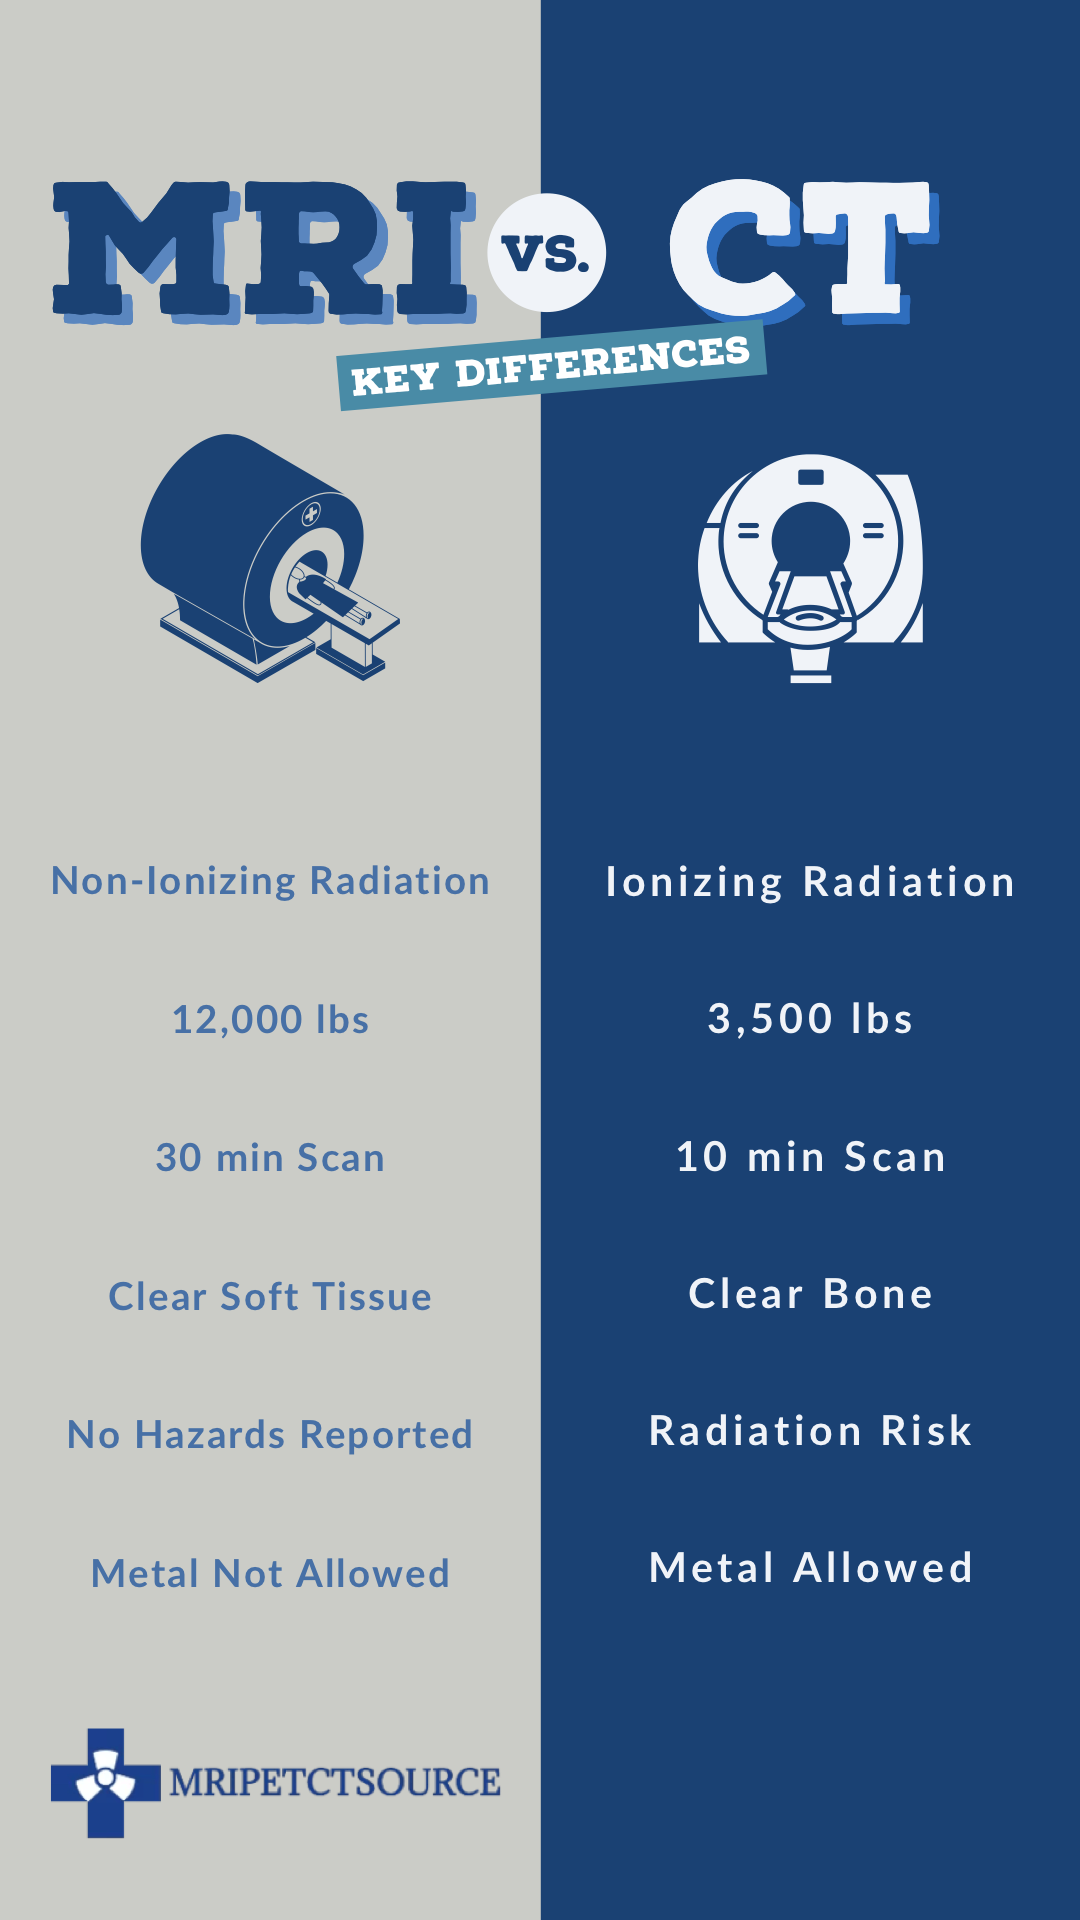 mri vs ct scan, CT scan vs MRI scan illustrating non-ionizing radiation, ionizing radiation, mri scanner weight, ct scanner weight, mri scan time, ct scan time, ct scan radiation risk, mri safety , metal not allowed in mri